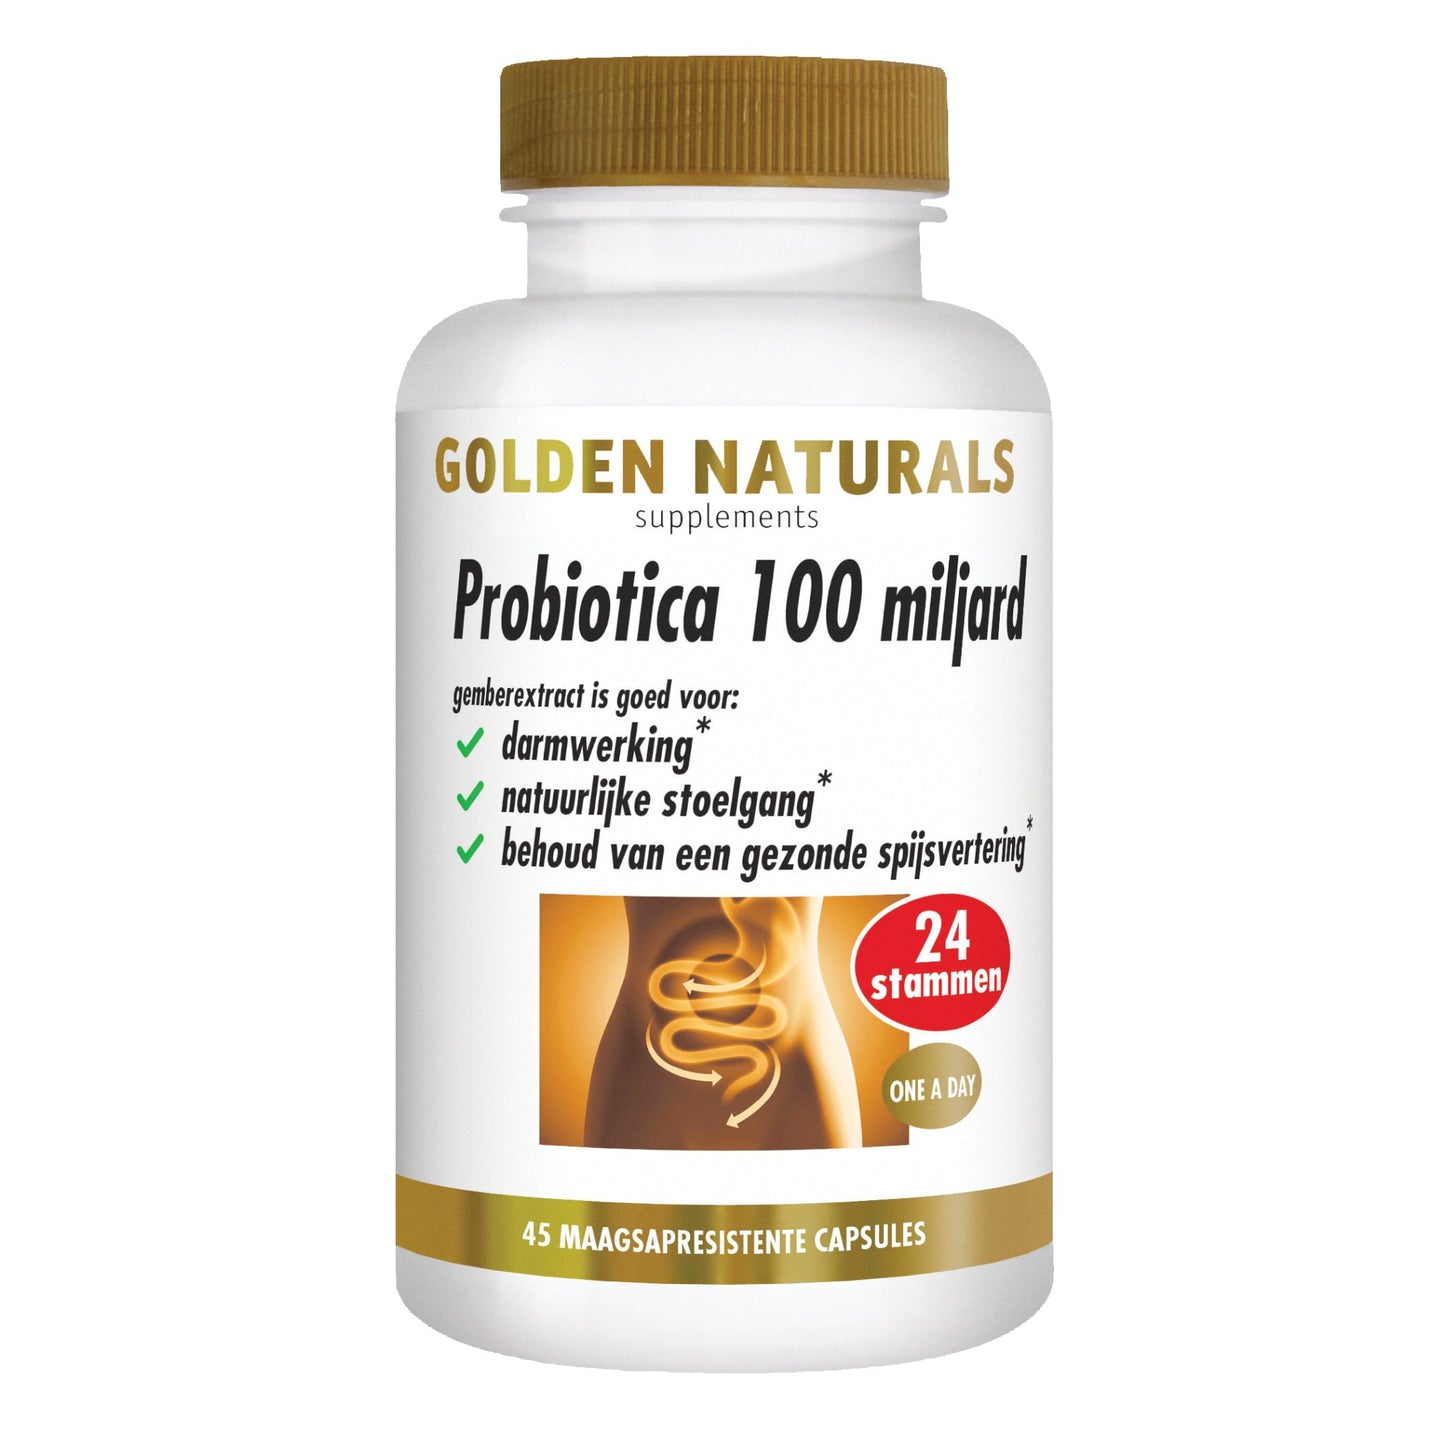 Probiotica 100 miljard - 45 - veganistische maagsapresistente capsules Supplement Golden Naturals   